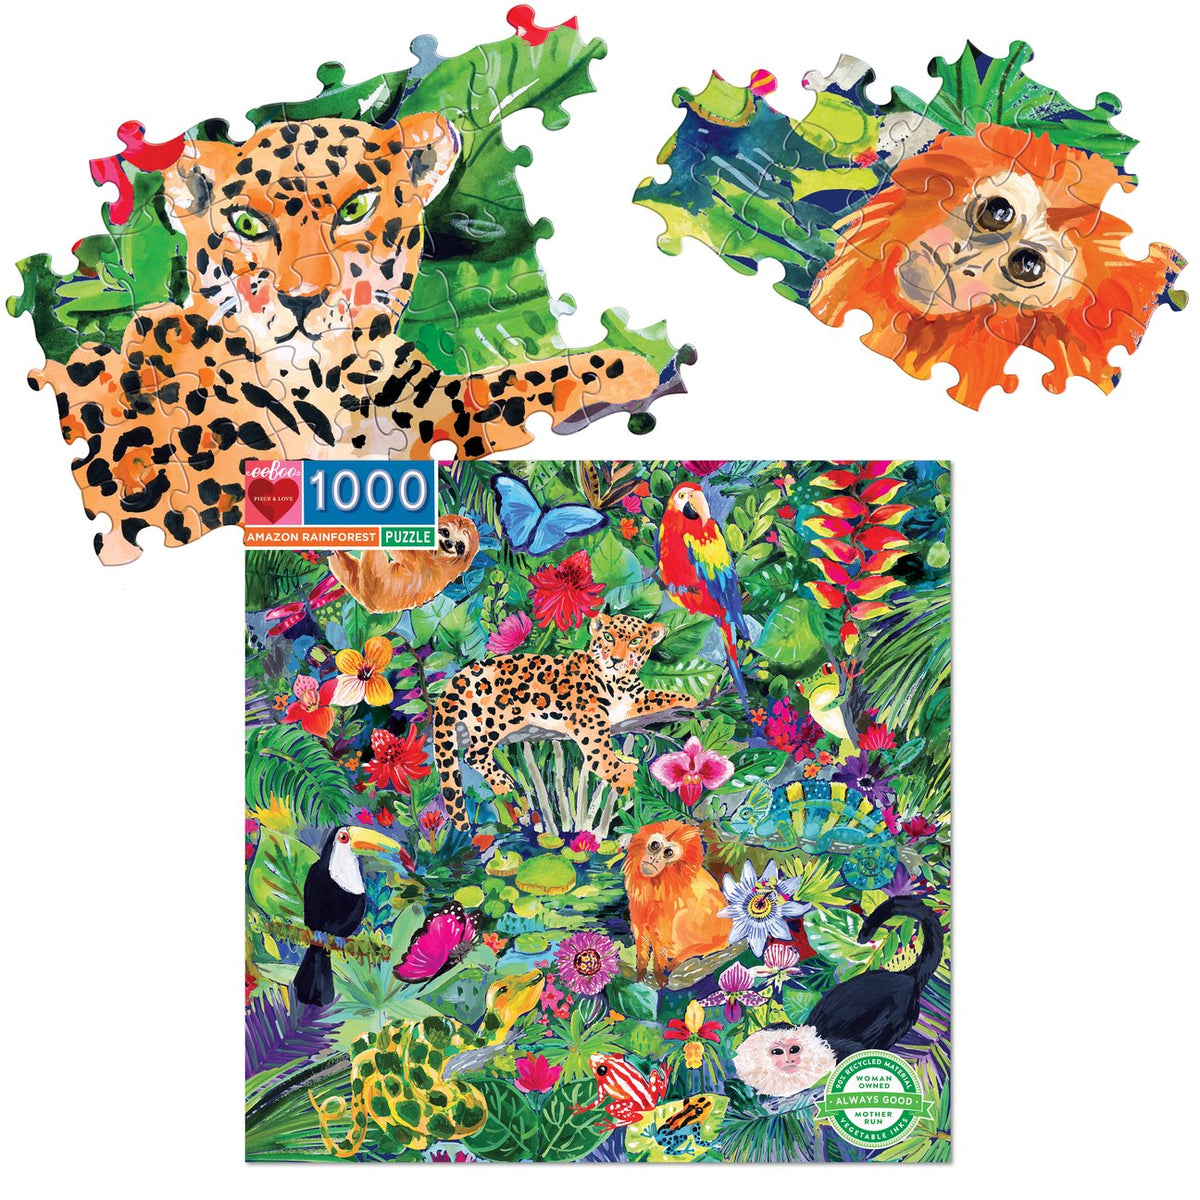 Amazon Rainforest 1000 Piece Puzzle - Quick Ship - Puzzlicious.com